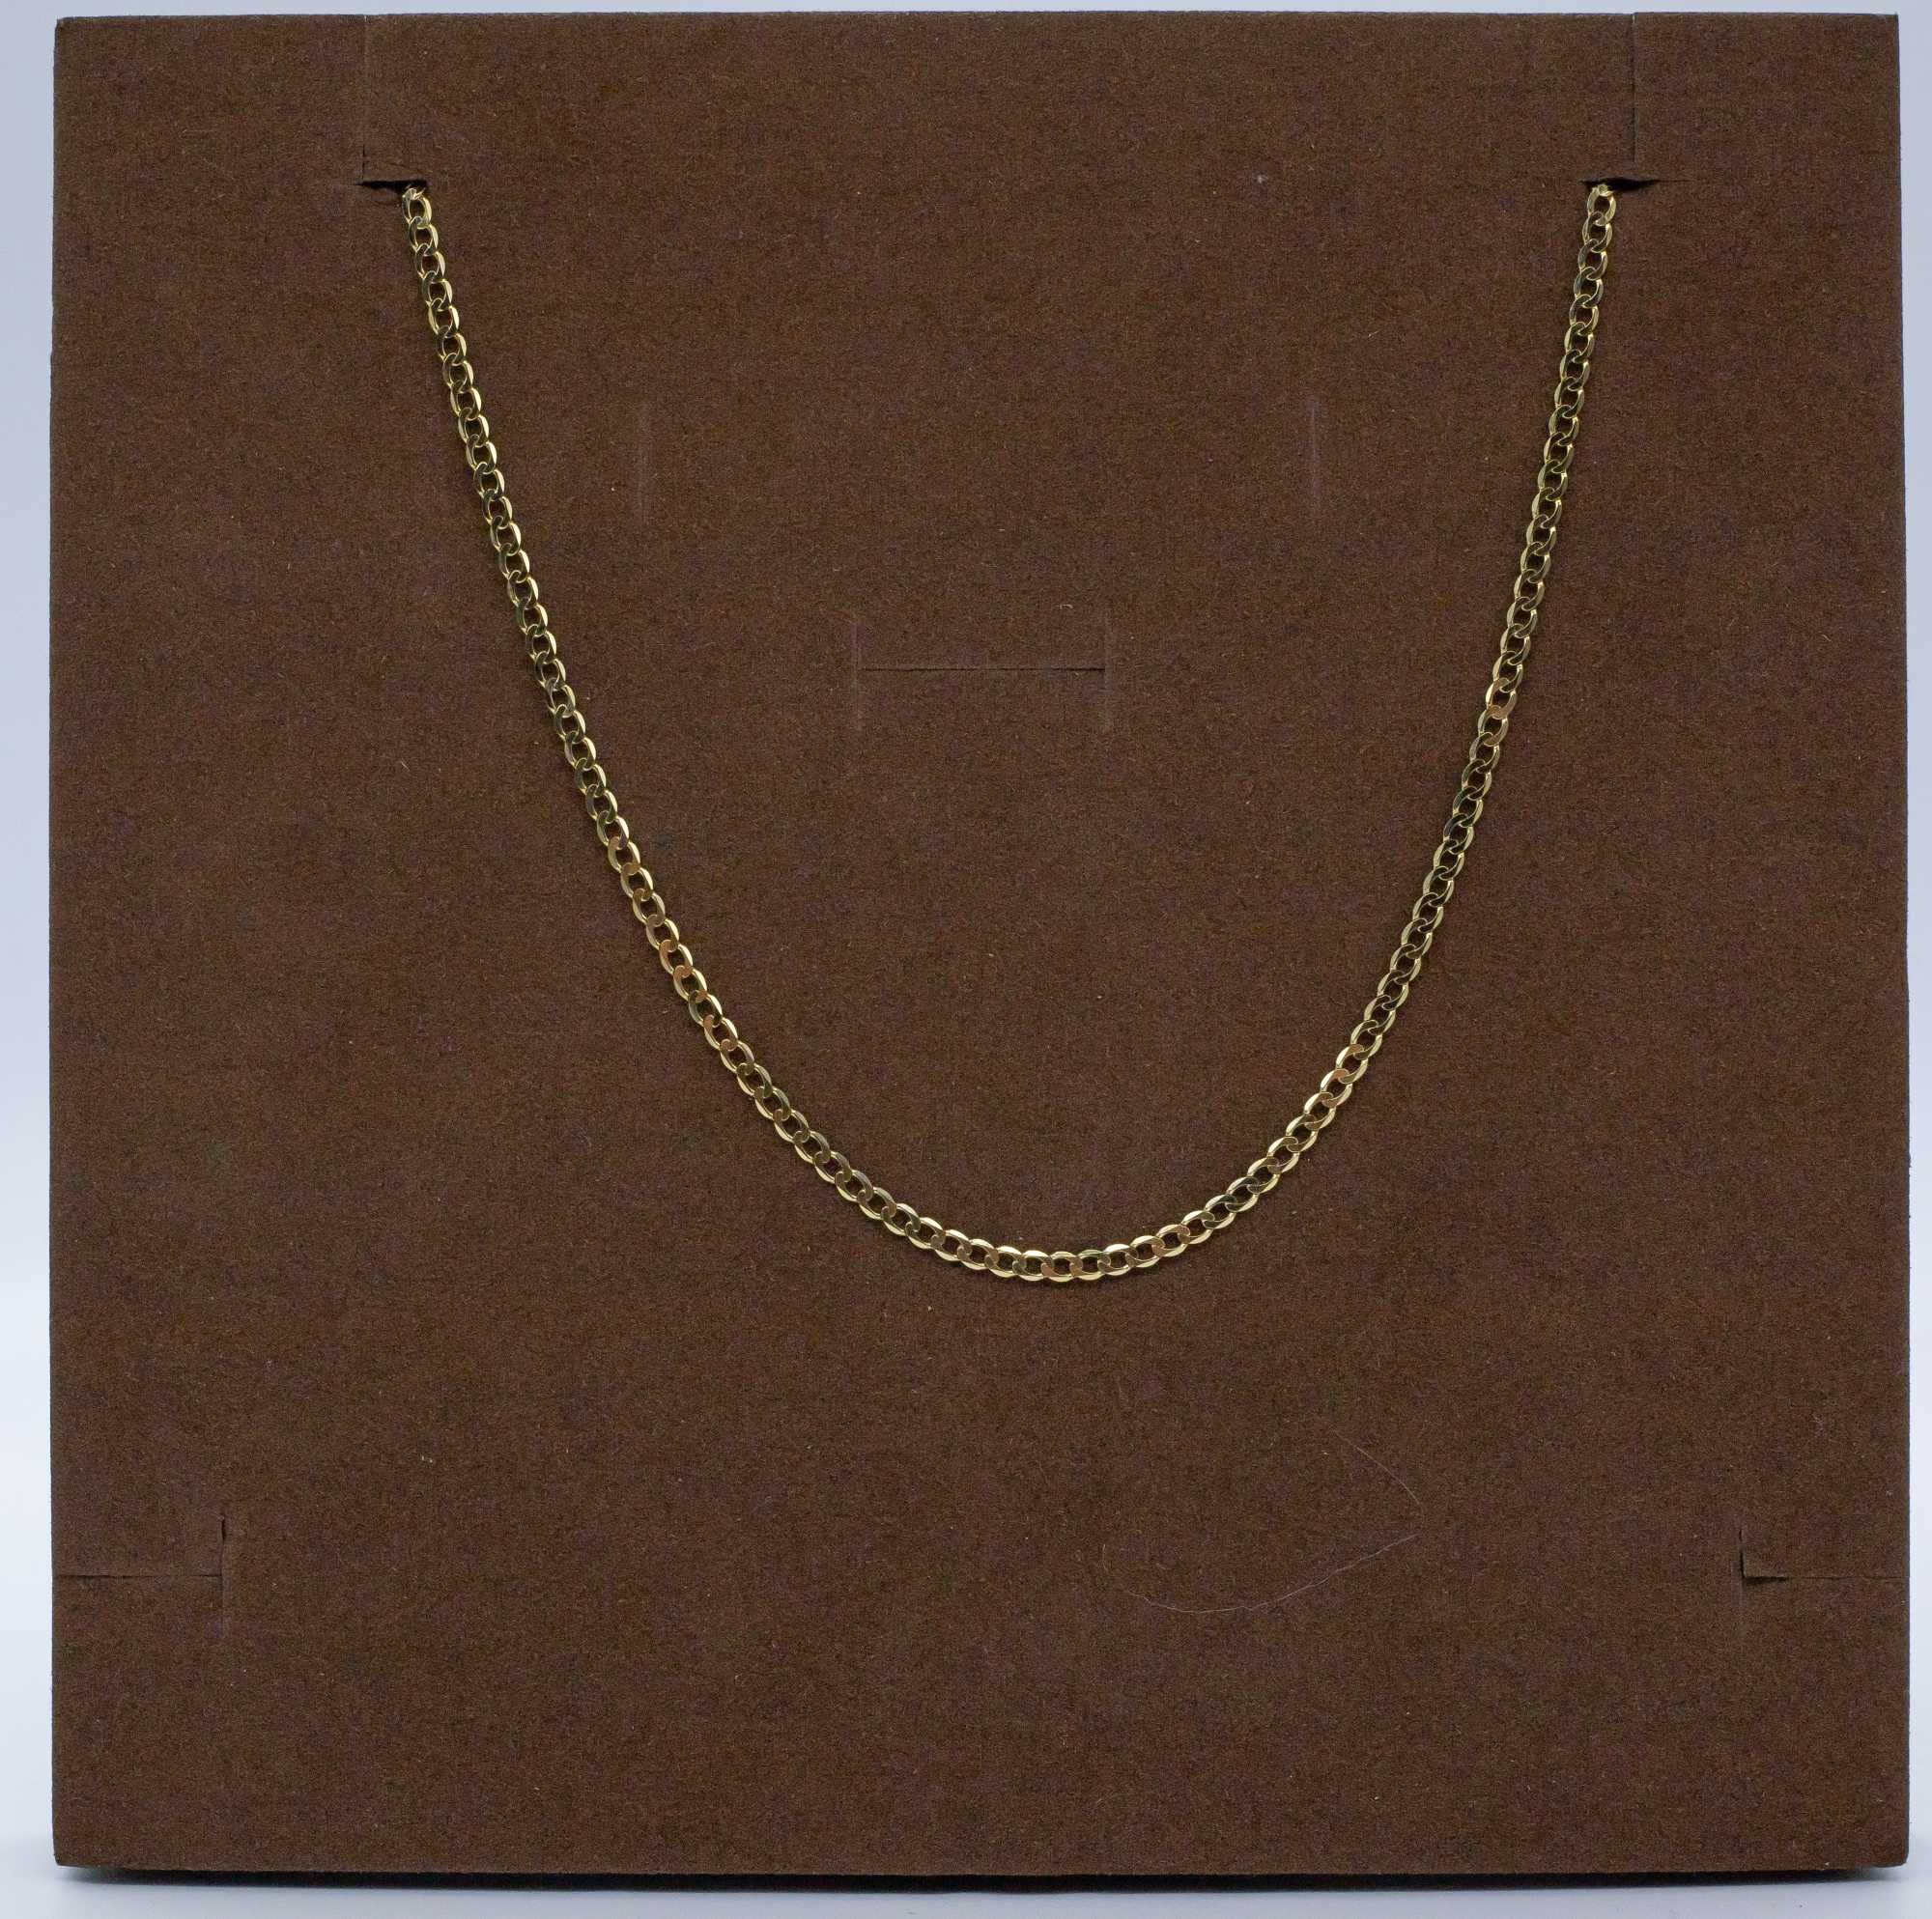 złoty łańcuszek 585 14K 4,52 gram 55cm Pancerka Nowa PEŁNA